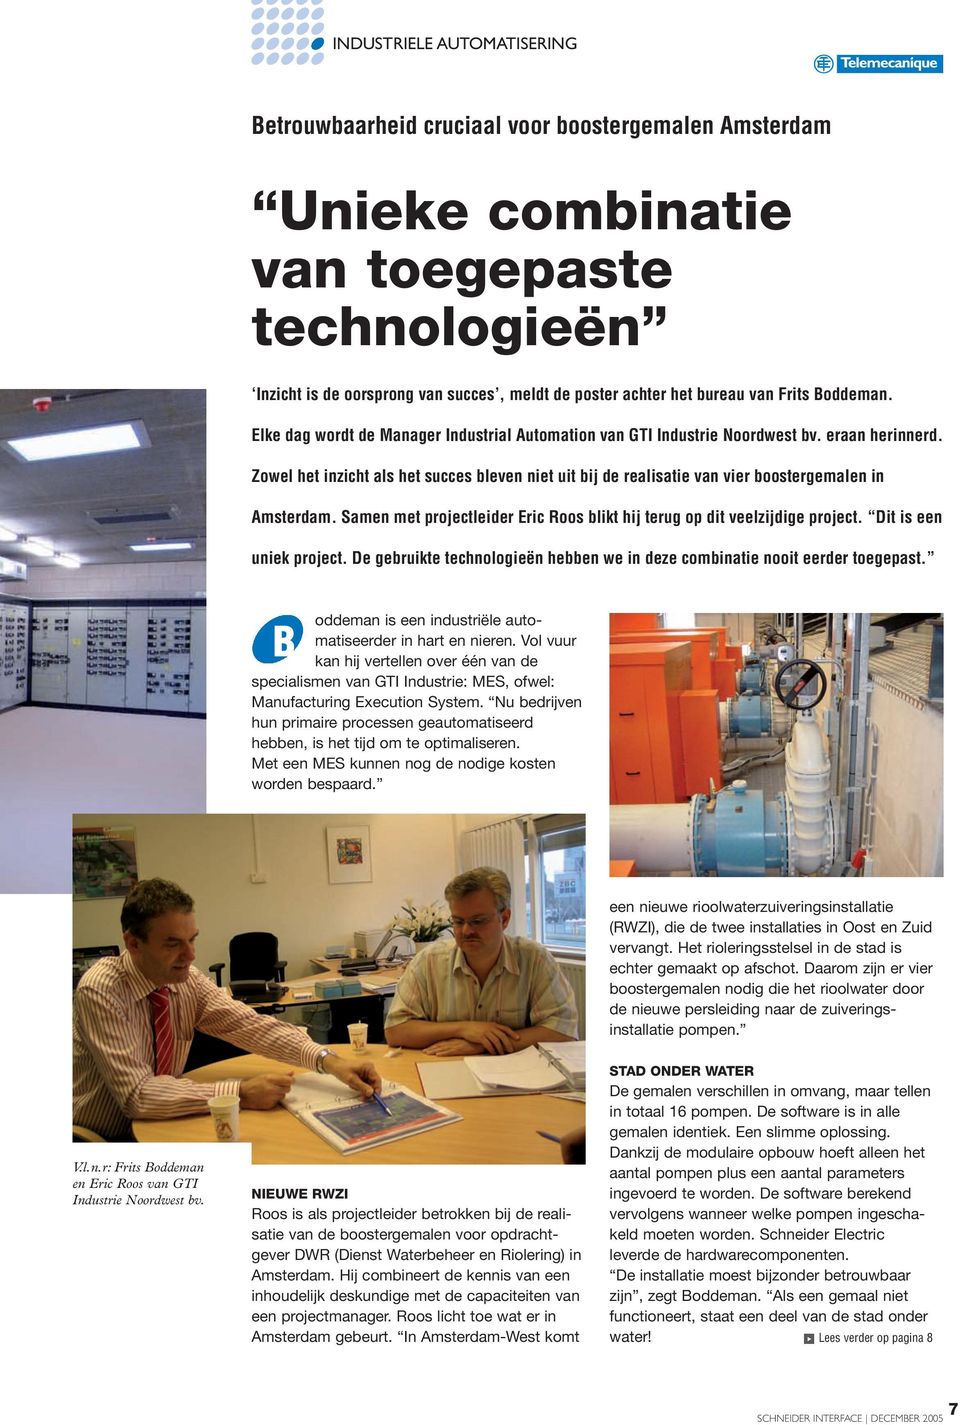 Zowel het inzicht als het succes bleven niet uit bij de realisatie van vier boostergemalen in Amsterdam. Samen met projectleider Eric Roos blikt hij terug op dit veelzijdige project.